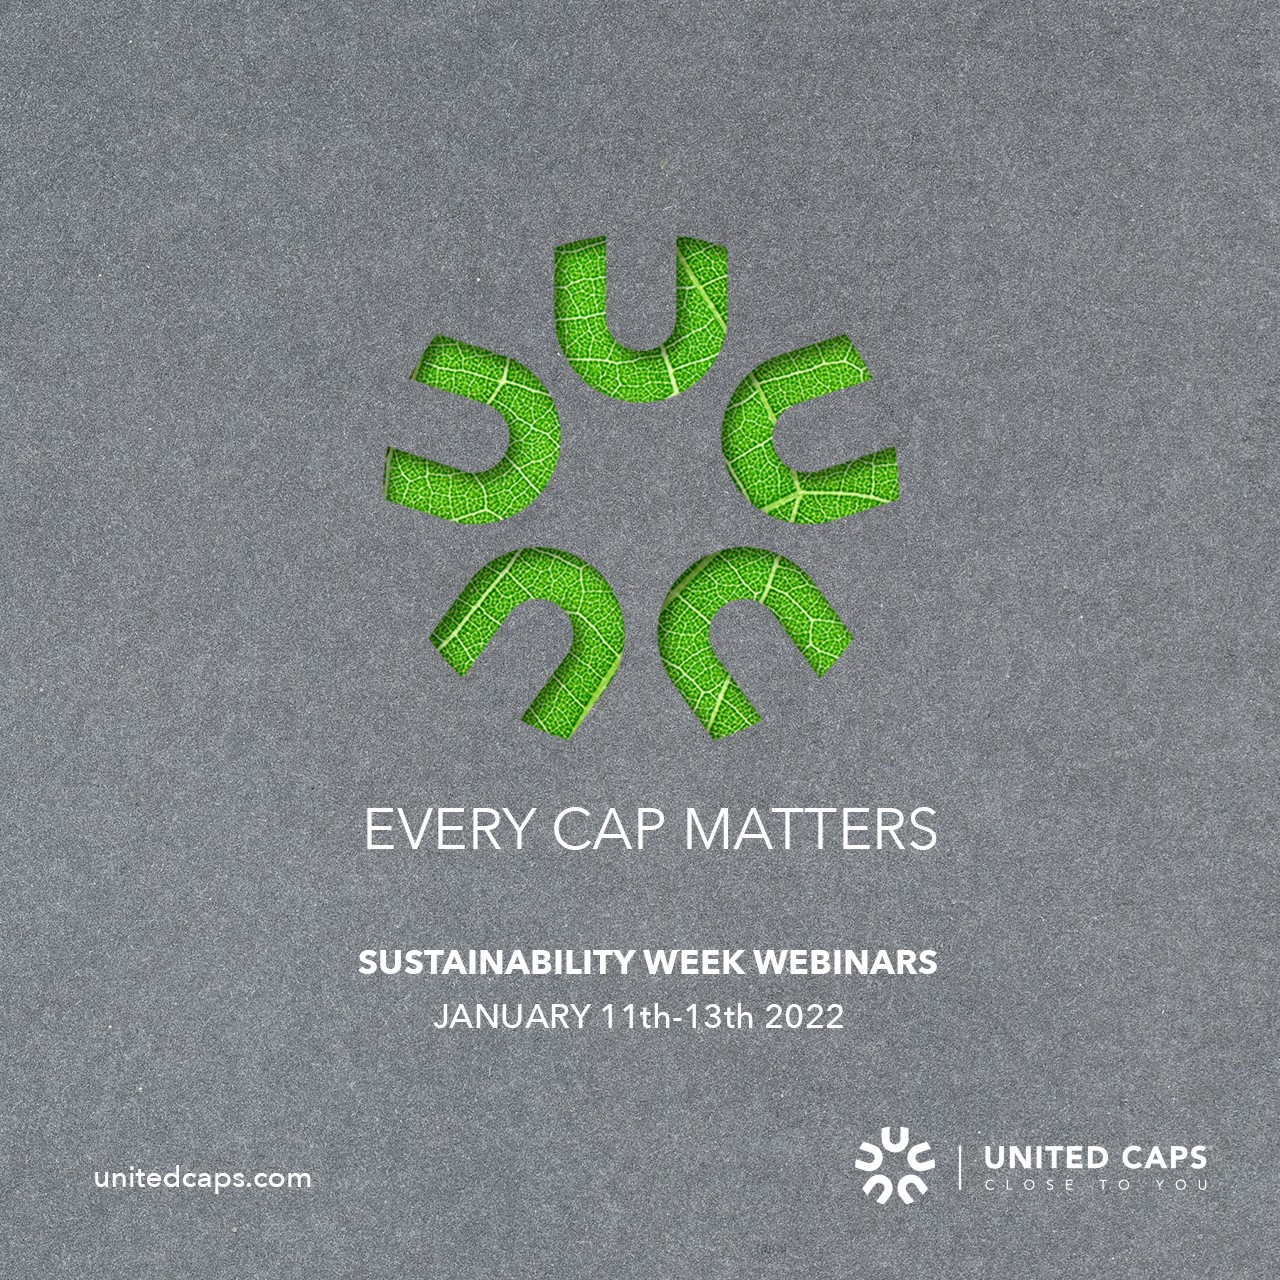 united cps sustainability webinars